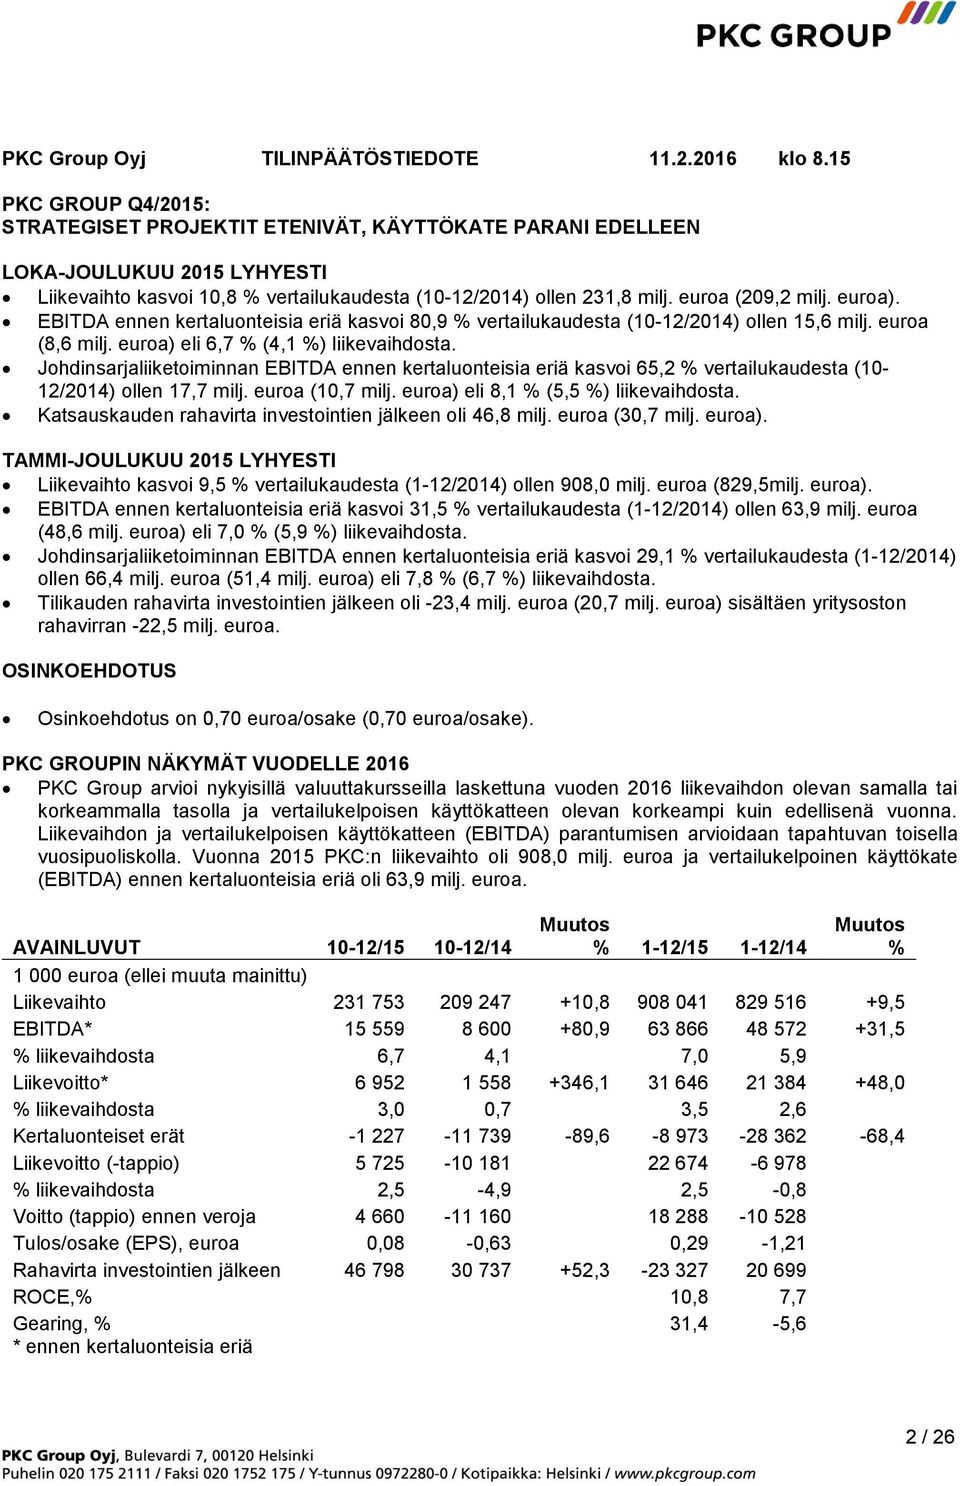 euroa (209,2 milj. euroa). EBITDA ennen kertaluonteisia eriä kasvoi 80,9 % vertailukaudesta (10-12/2014) ollen 15,6 milj. euroa (8,6 milj. euroa) eli 6,7 % (4,1 %) liikevaihdosta.